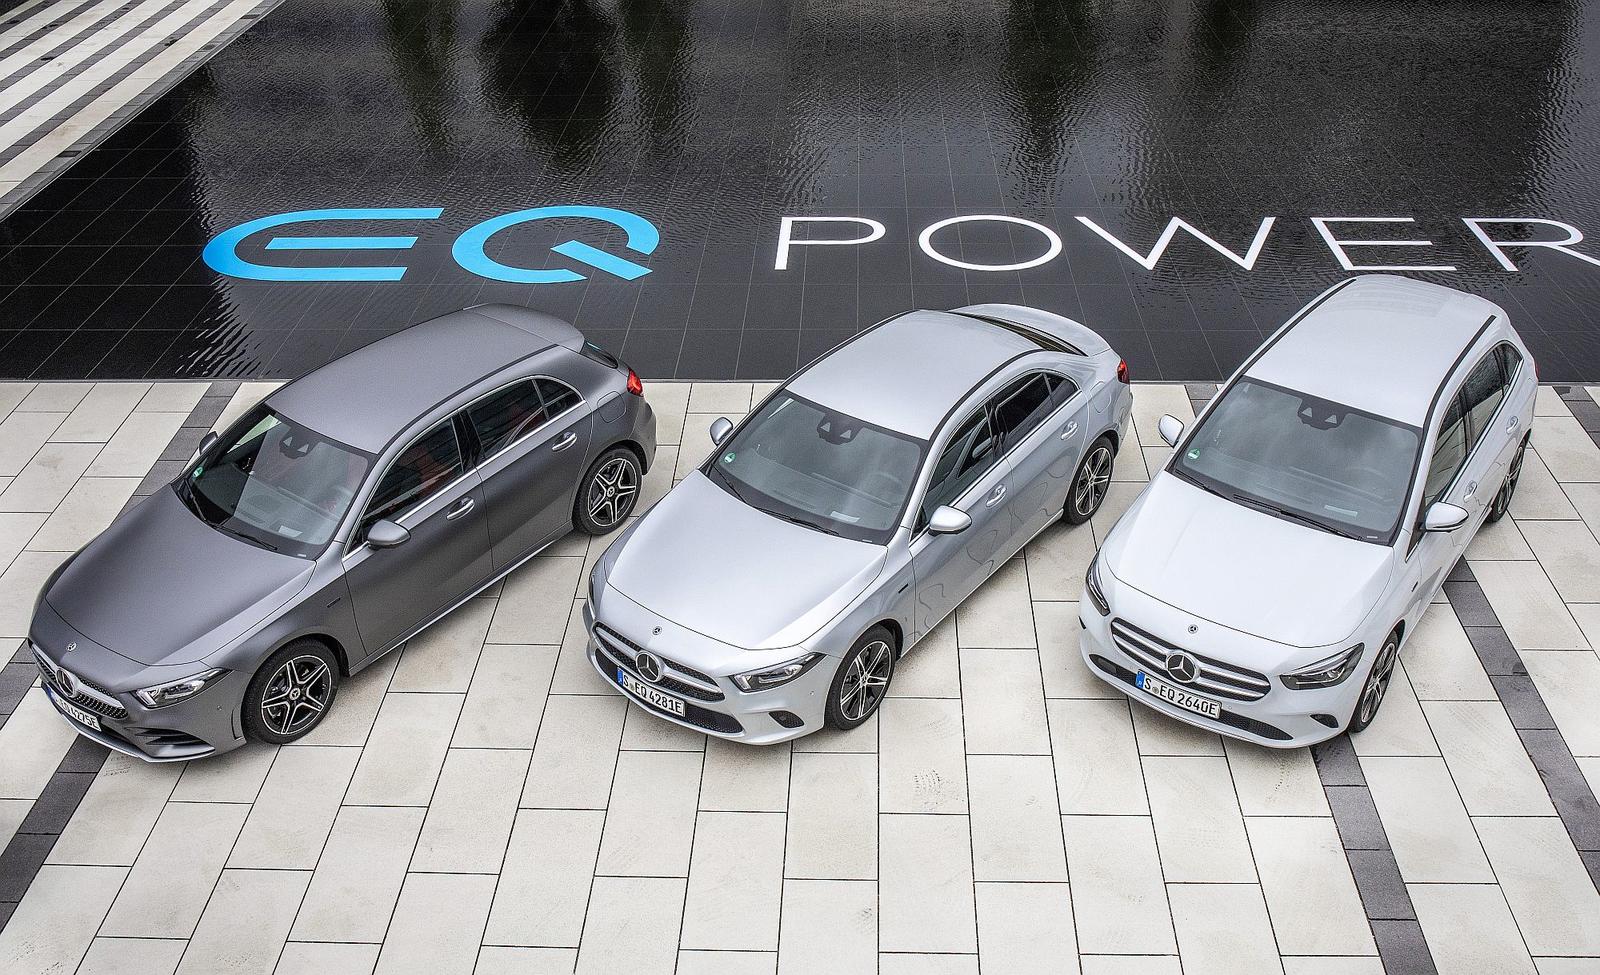 Mercedes-Benz Plug-in-Hybride – die neue EQ Power Familie Frankfurt 2019

Mercedes-Benz plug-in hybrids – The New EQ Power Family Frankfurt, September 2019